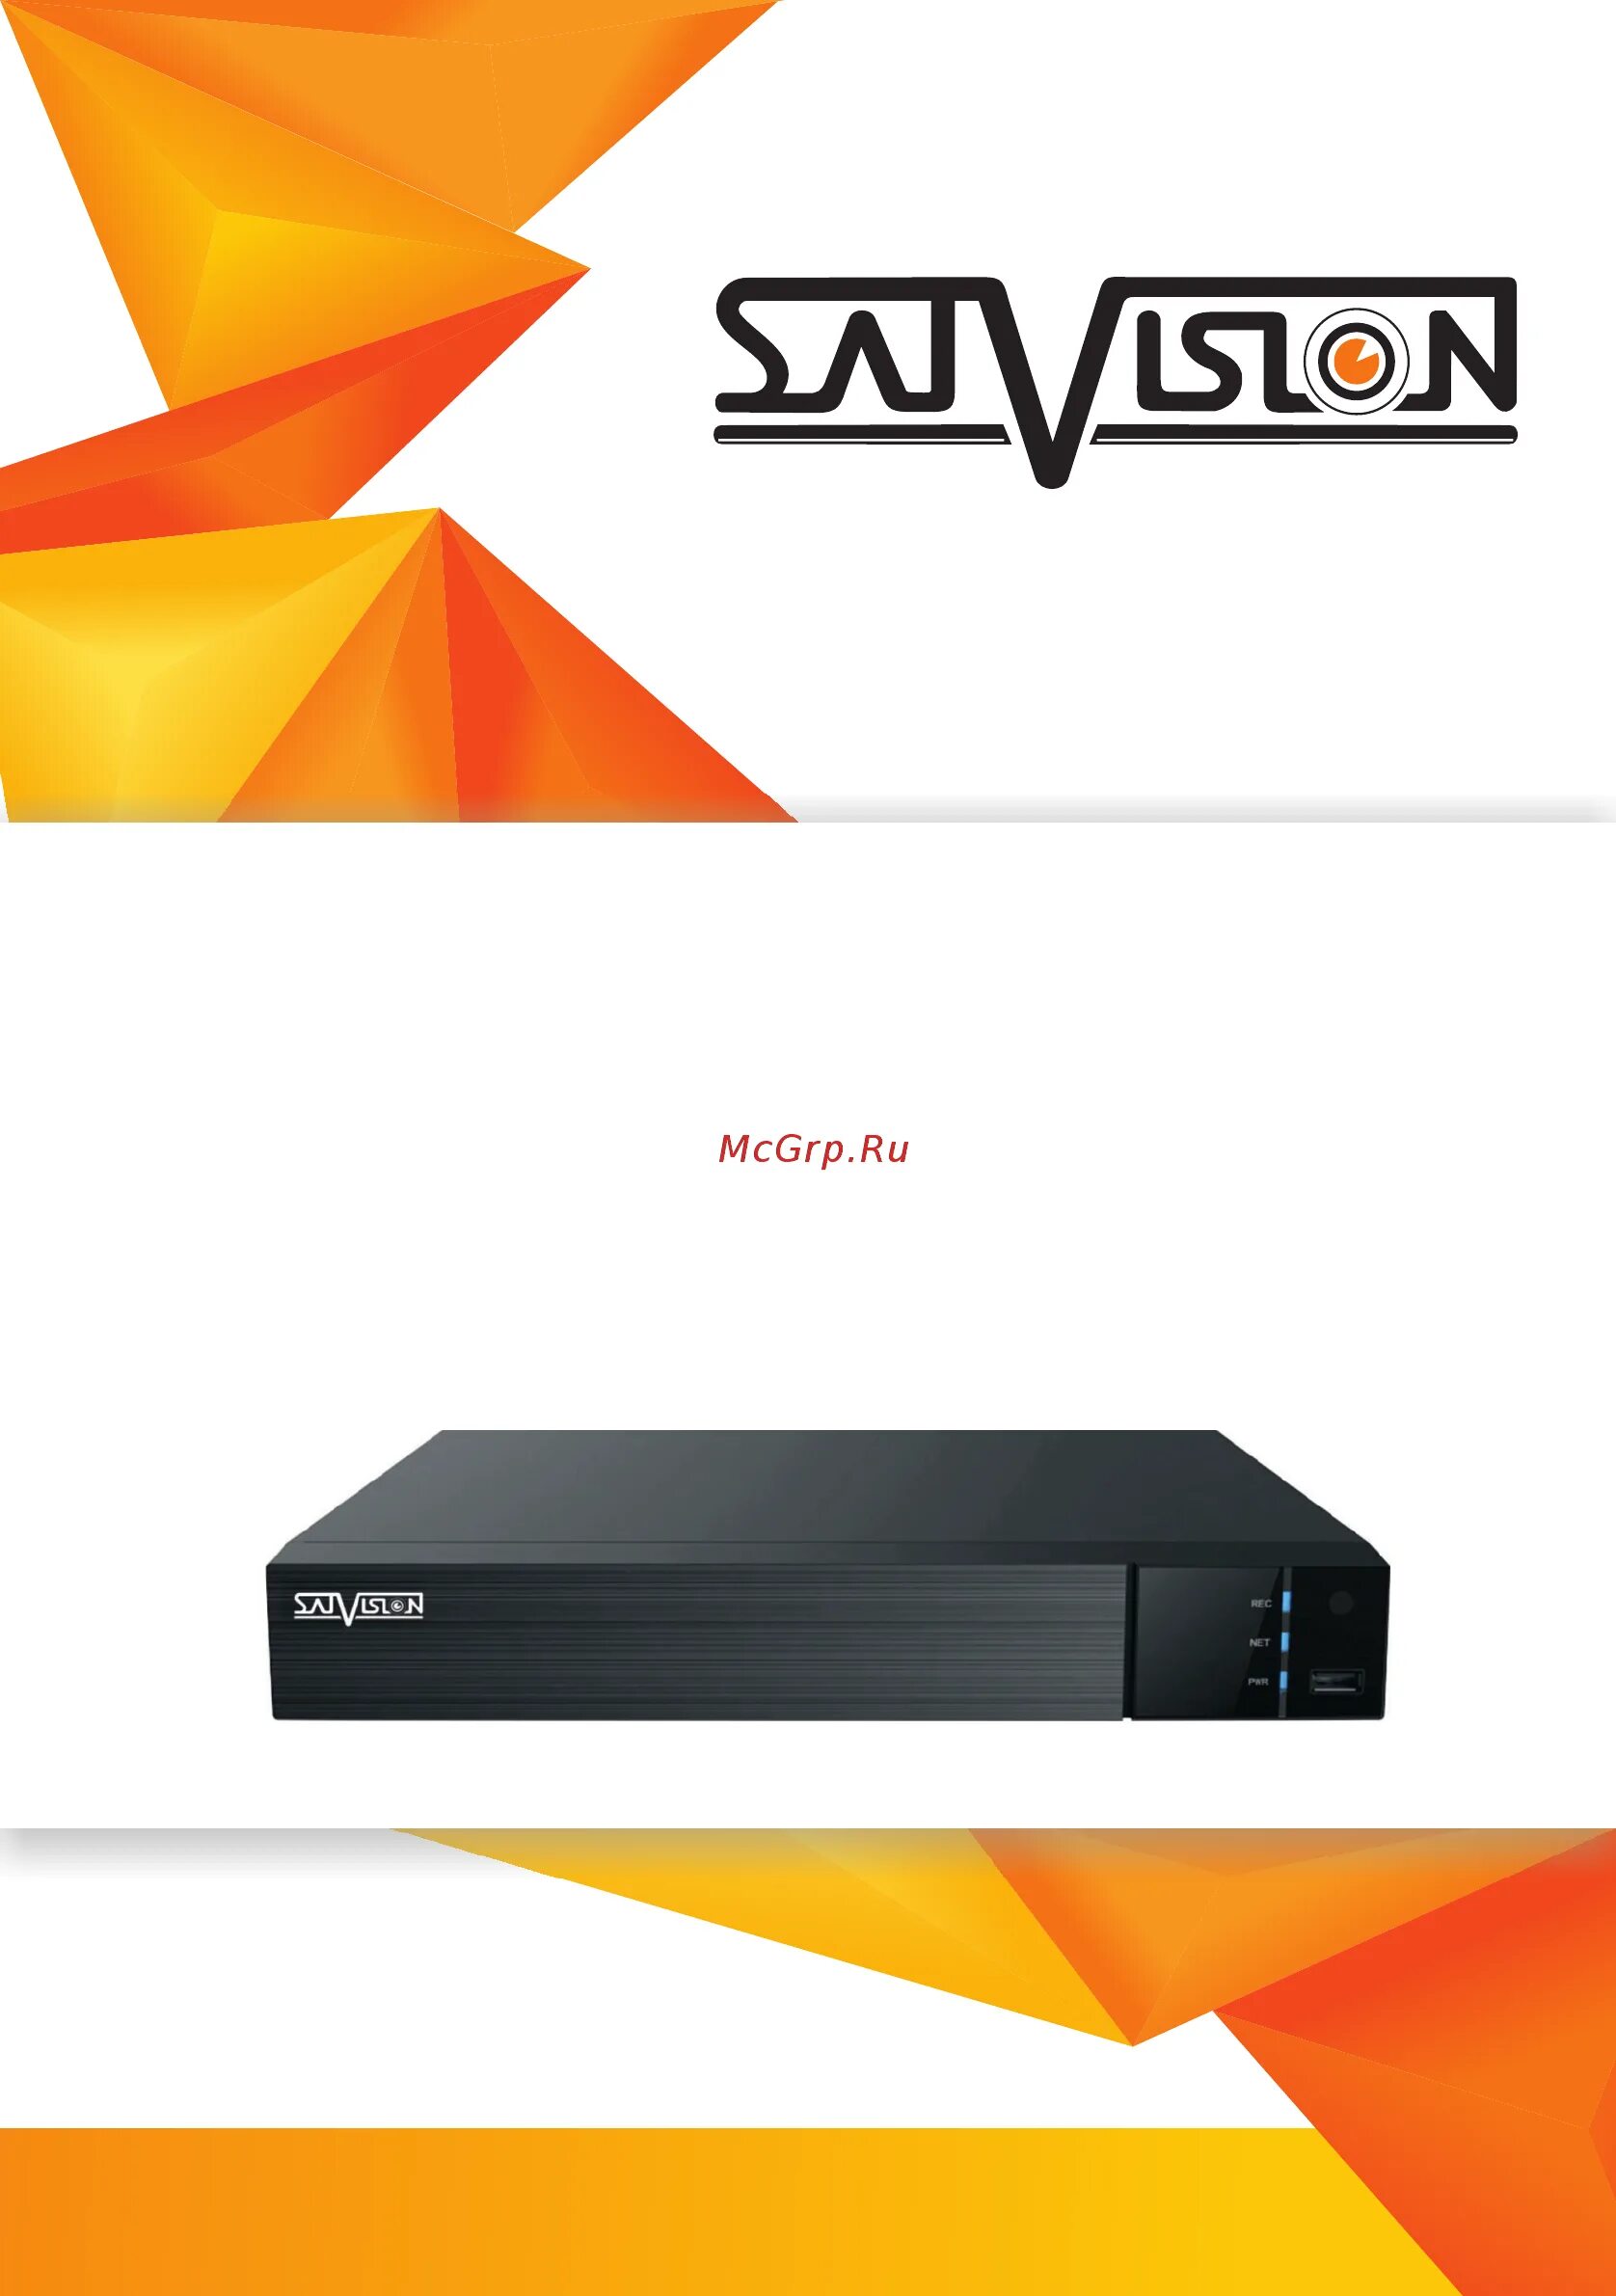 Satvision SVR-8812ah. Satvision видеорегистратор SVR-6812ah. SVR-4212ah-Pro. SVR-8212ah Pro NVMS 9000 V.2.0 sintsec.